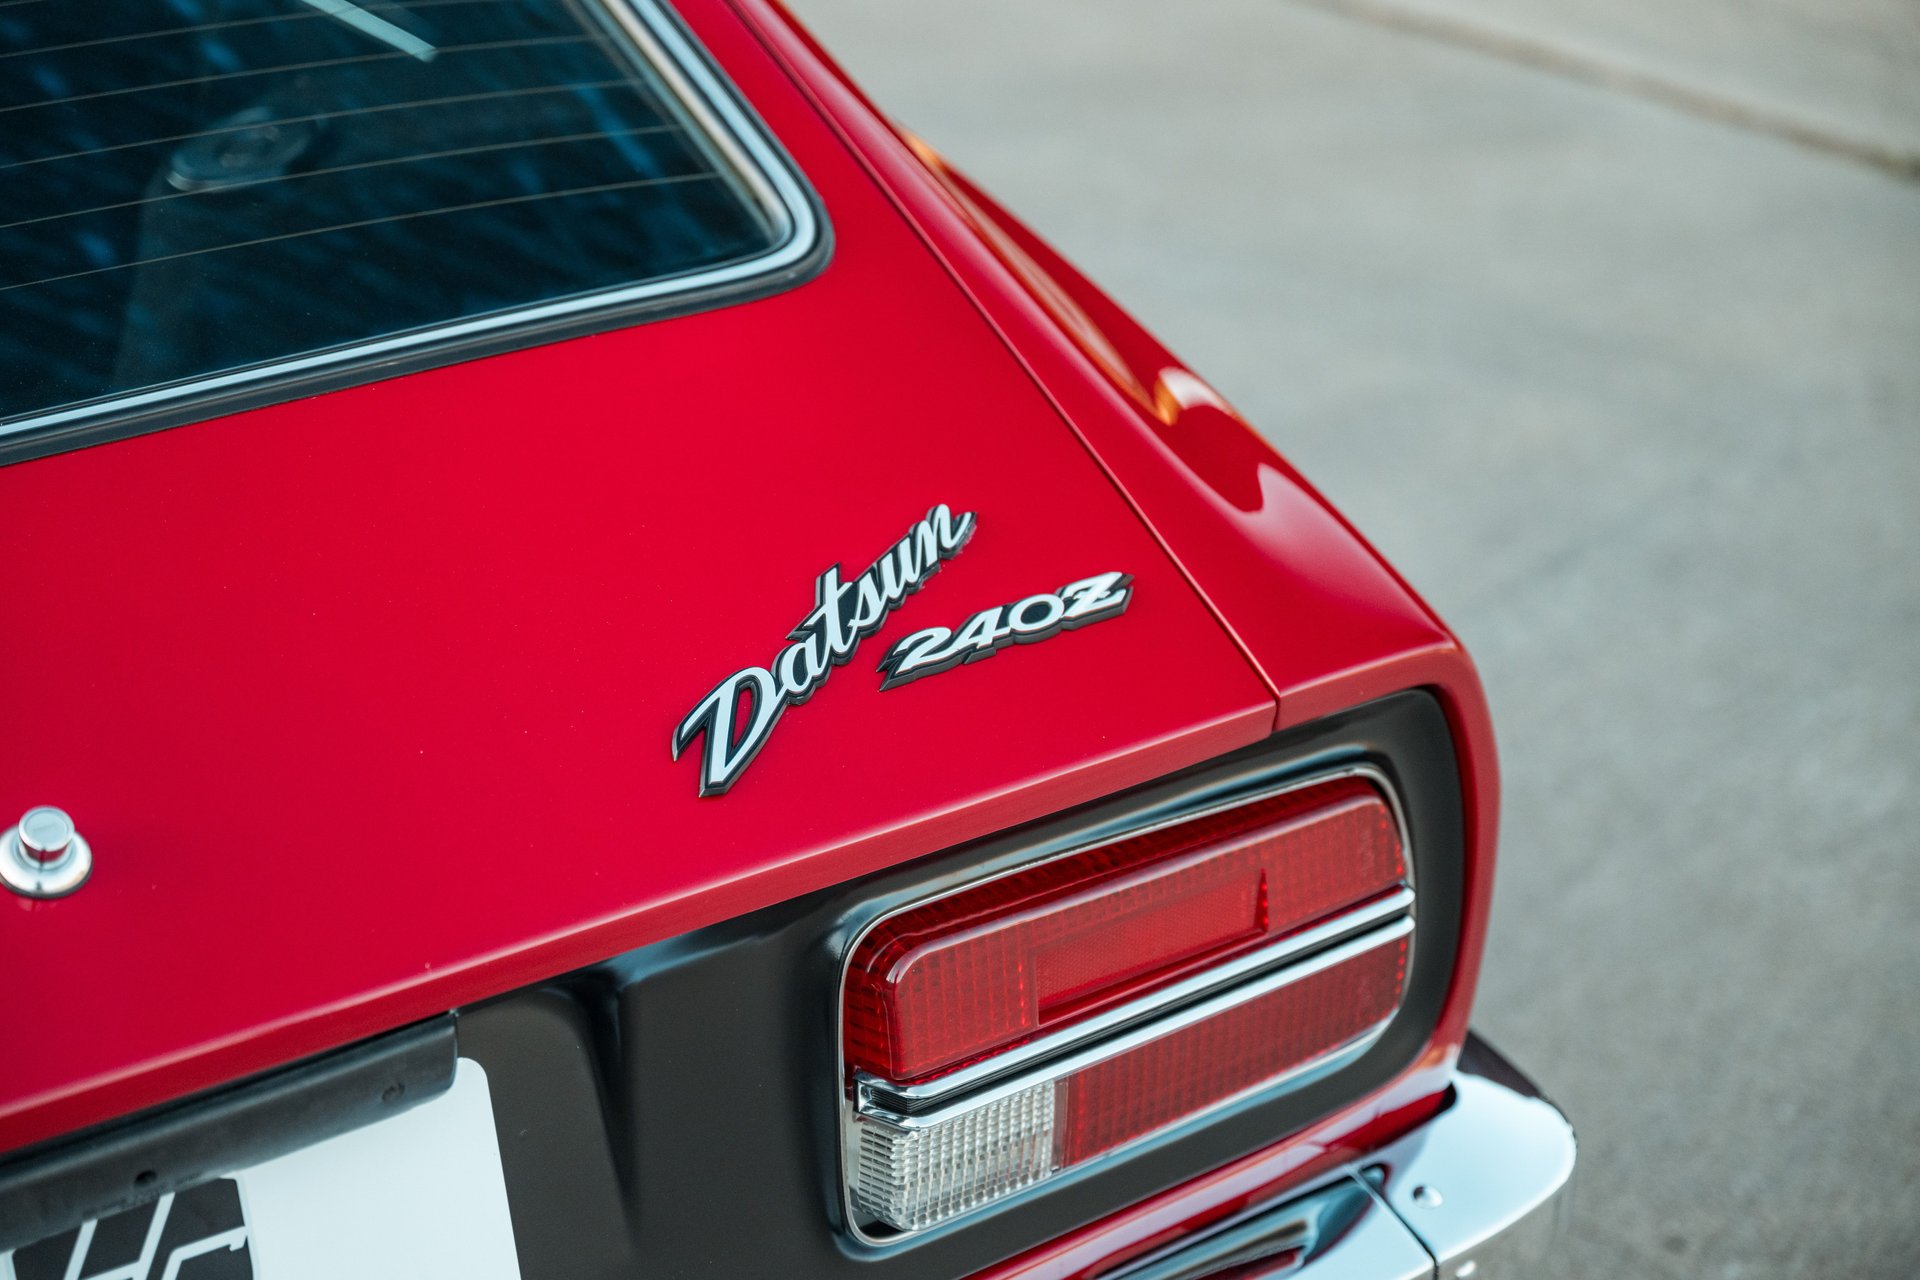 For Sale 1972 Datsun 240Z